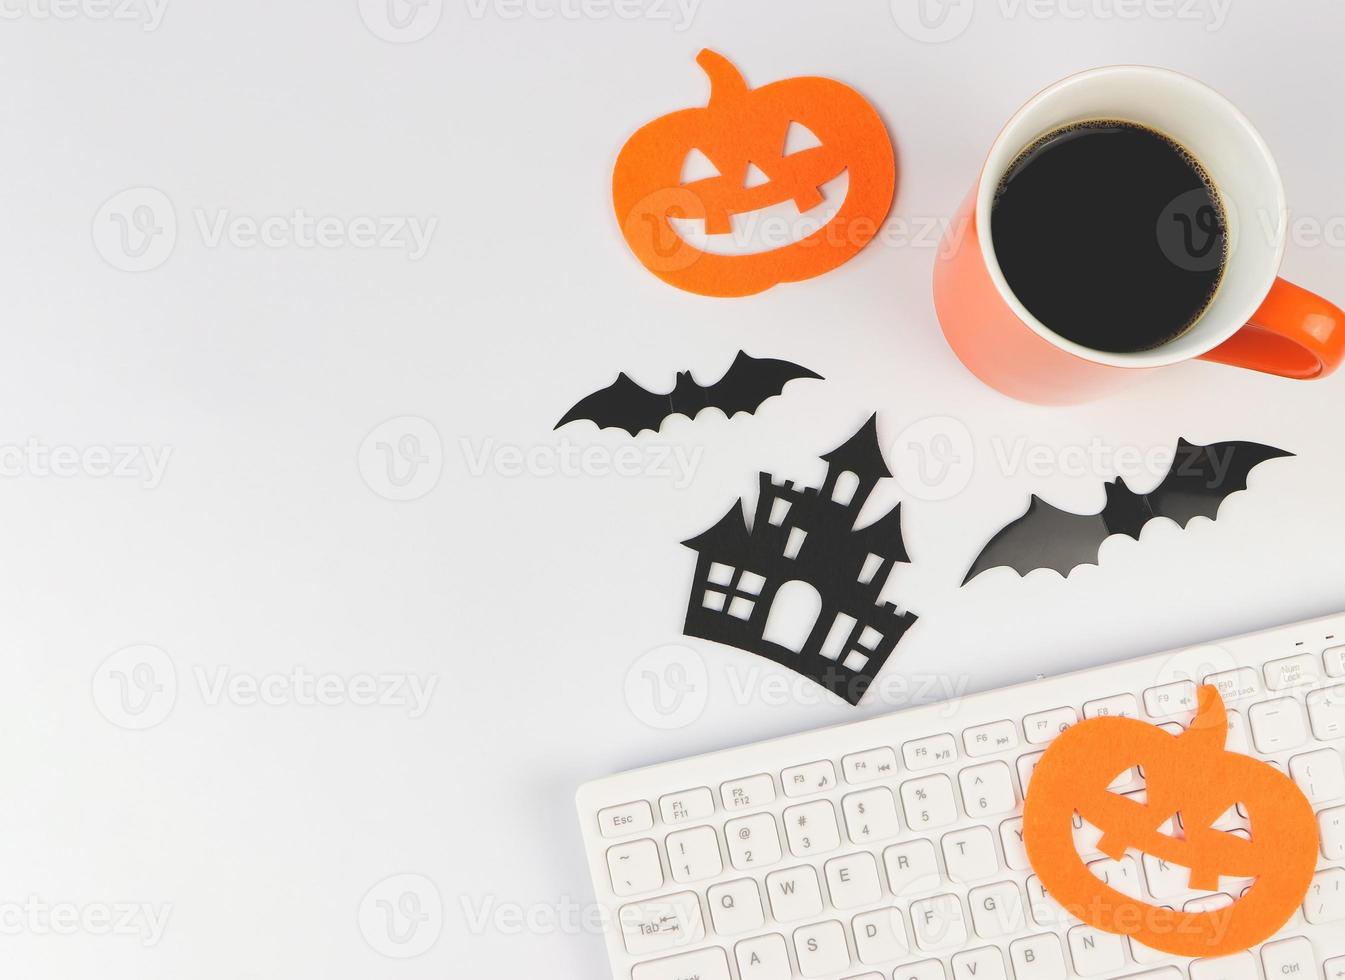 mise à plat du clavier de l'ordinateur, tasse à café, décorations d'halloween, chauves-souris et citrouille sur fond blanc avec espace de copie. photo